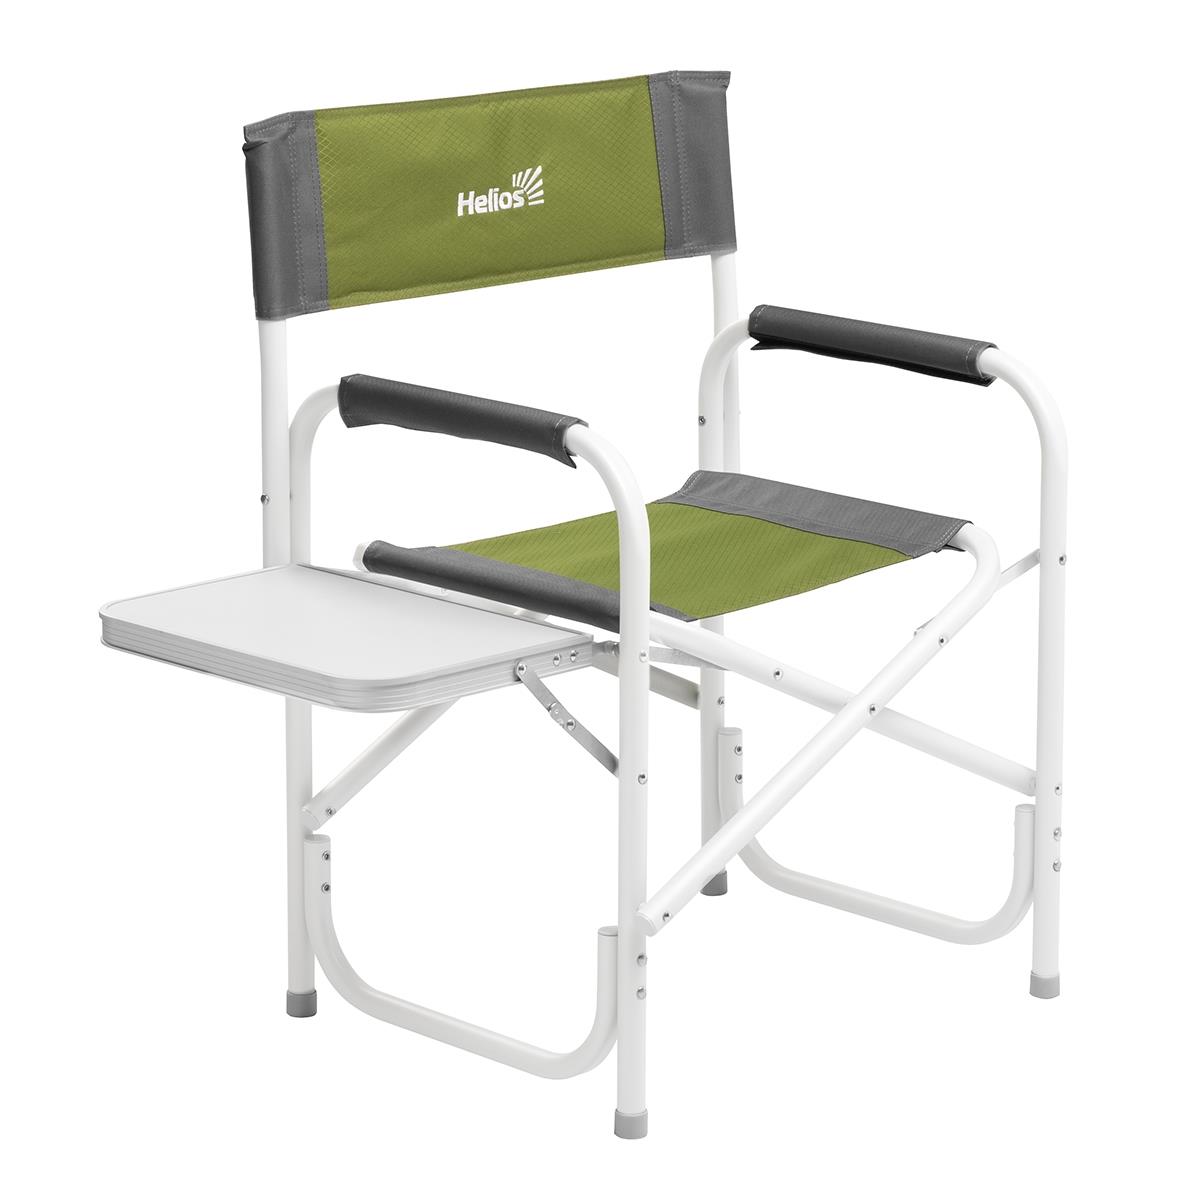  Кресло директорское с отк.стол серый/зеленый макс нагруз 125 кг